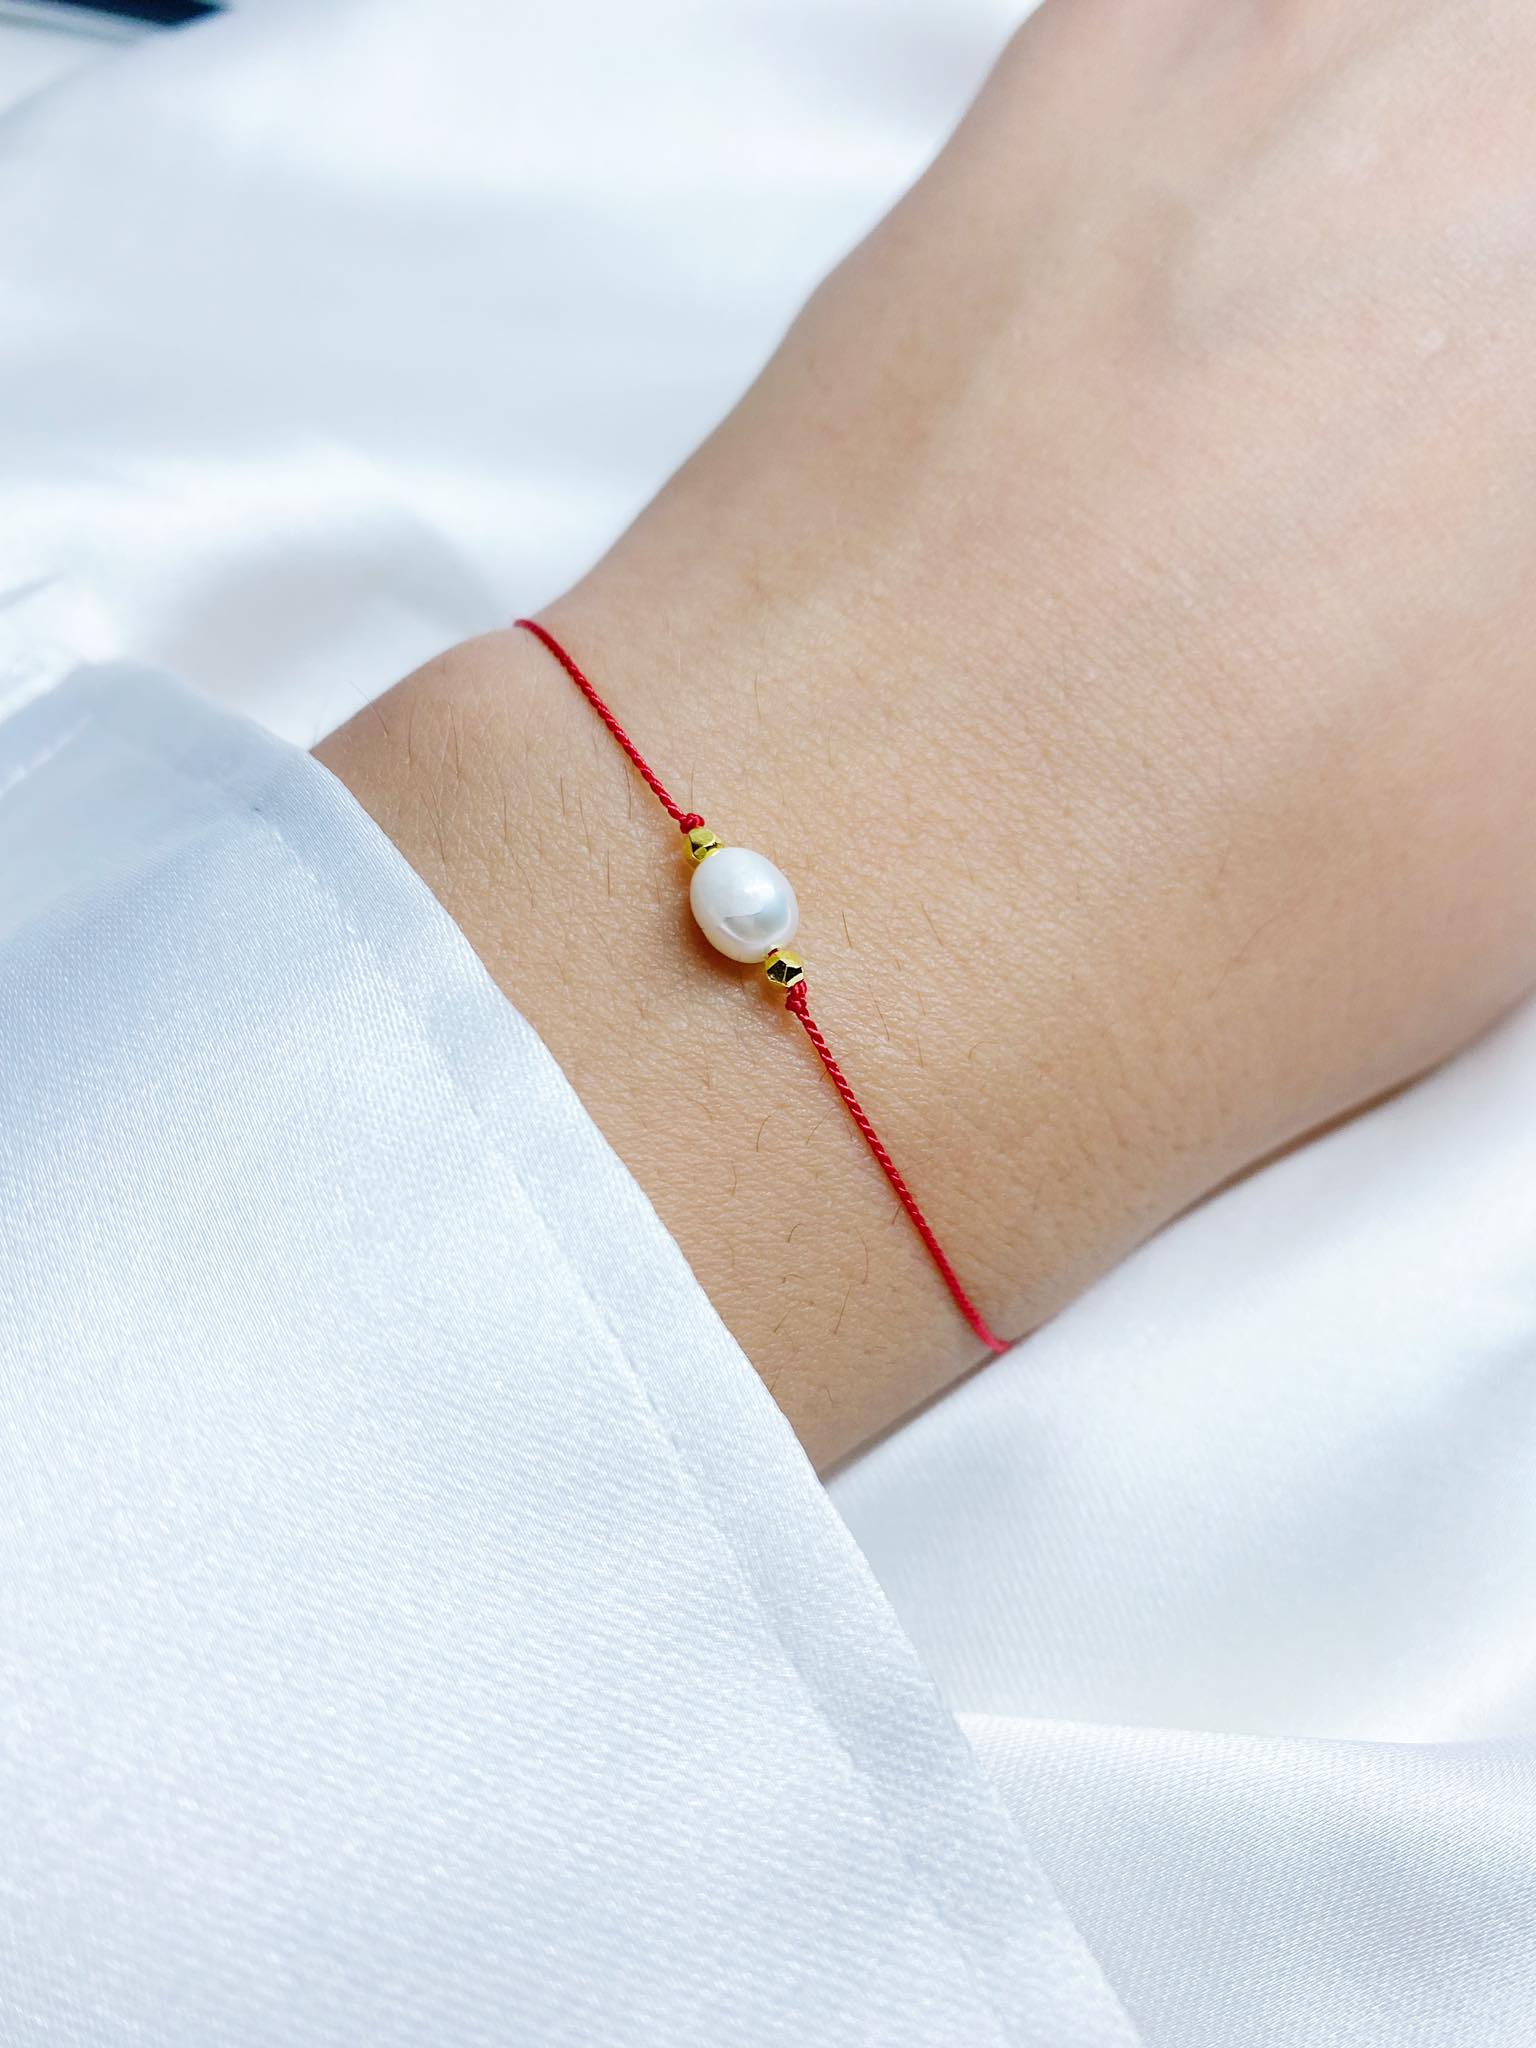 Czerwona bransoletka szczęścia wykonana z nici jedwabnej, ozdobiona białą perłą i hematytem w kolorze złotym, zawiązana na nadgarstku.